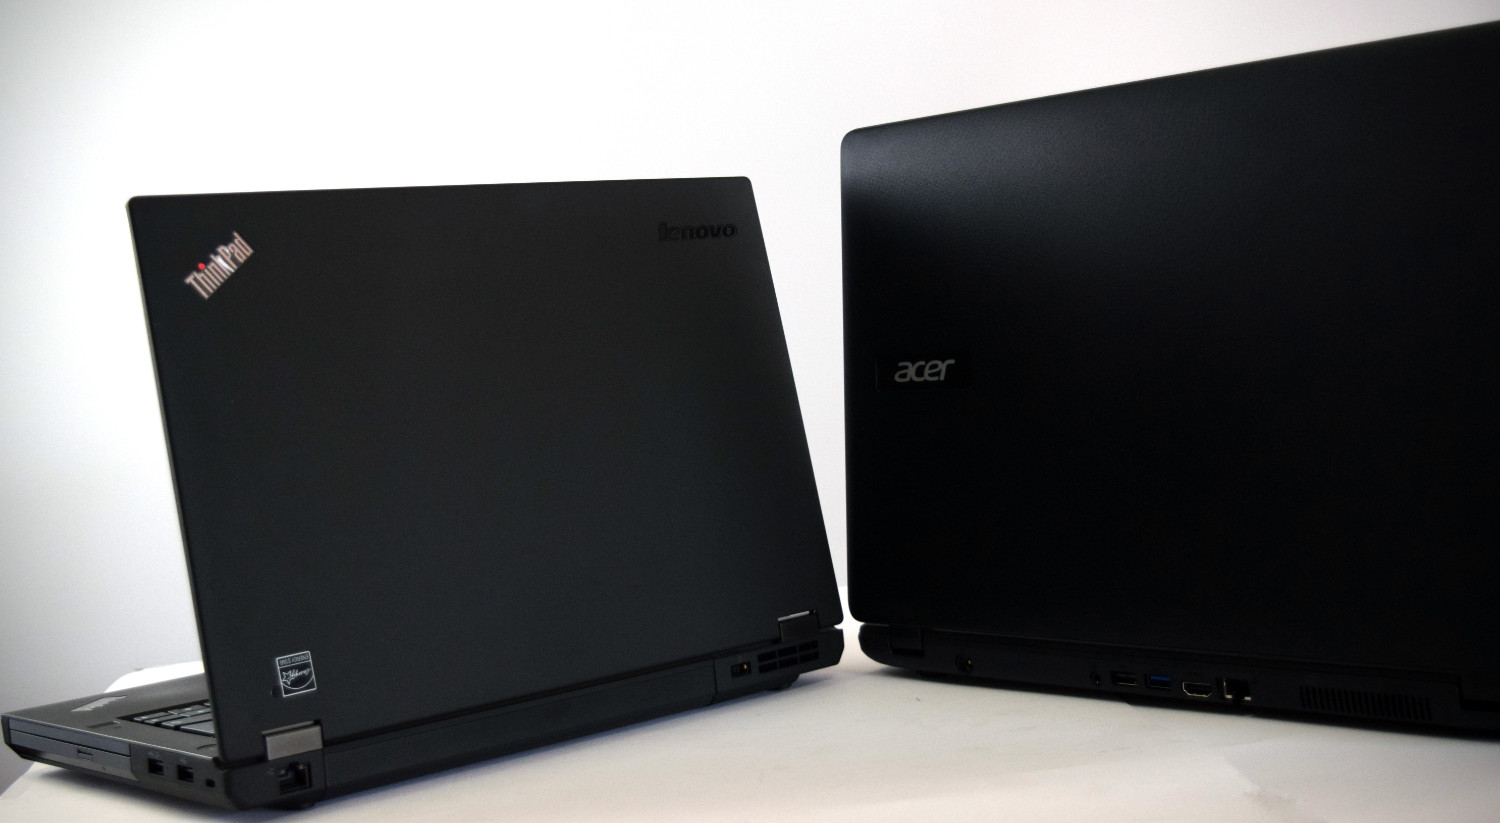 Lenovo ThinkPad T440p a Acer Extensa 15 - pohľad zozadu